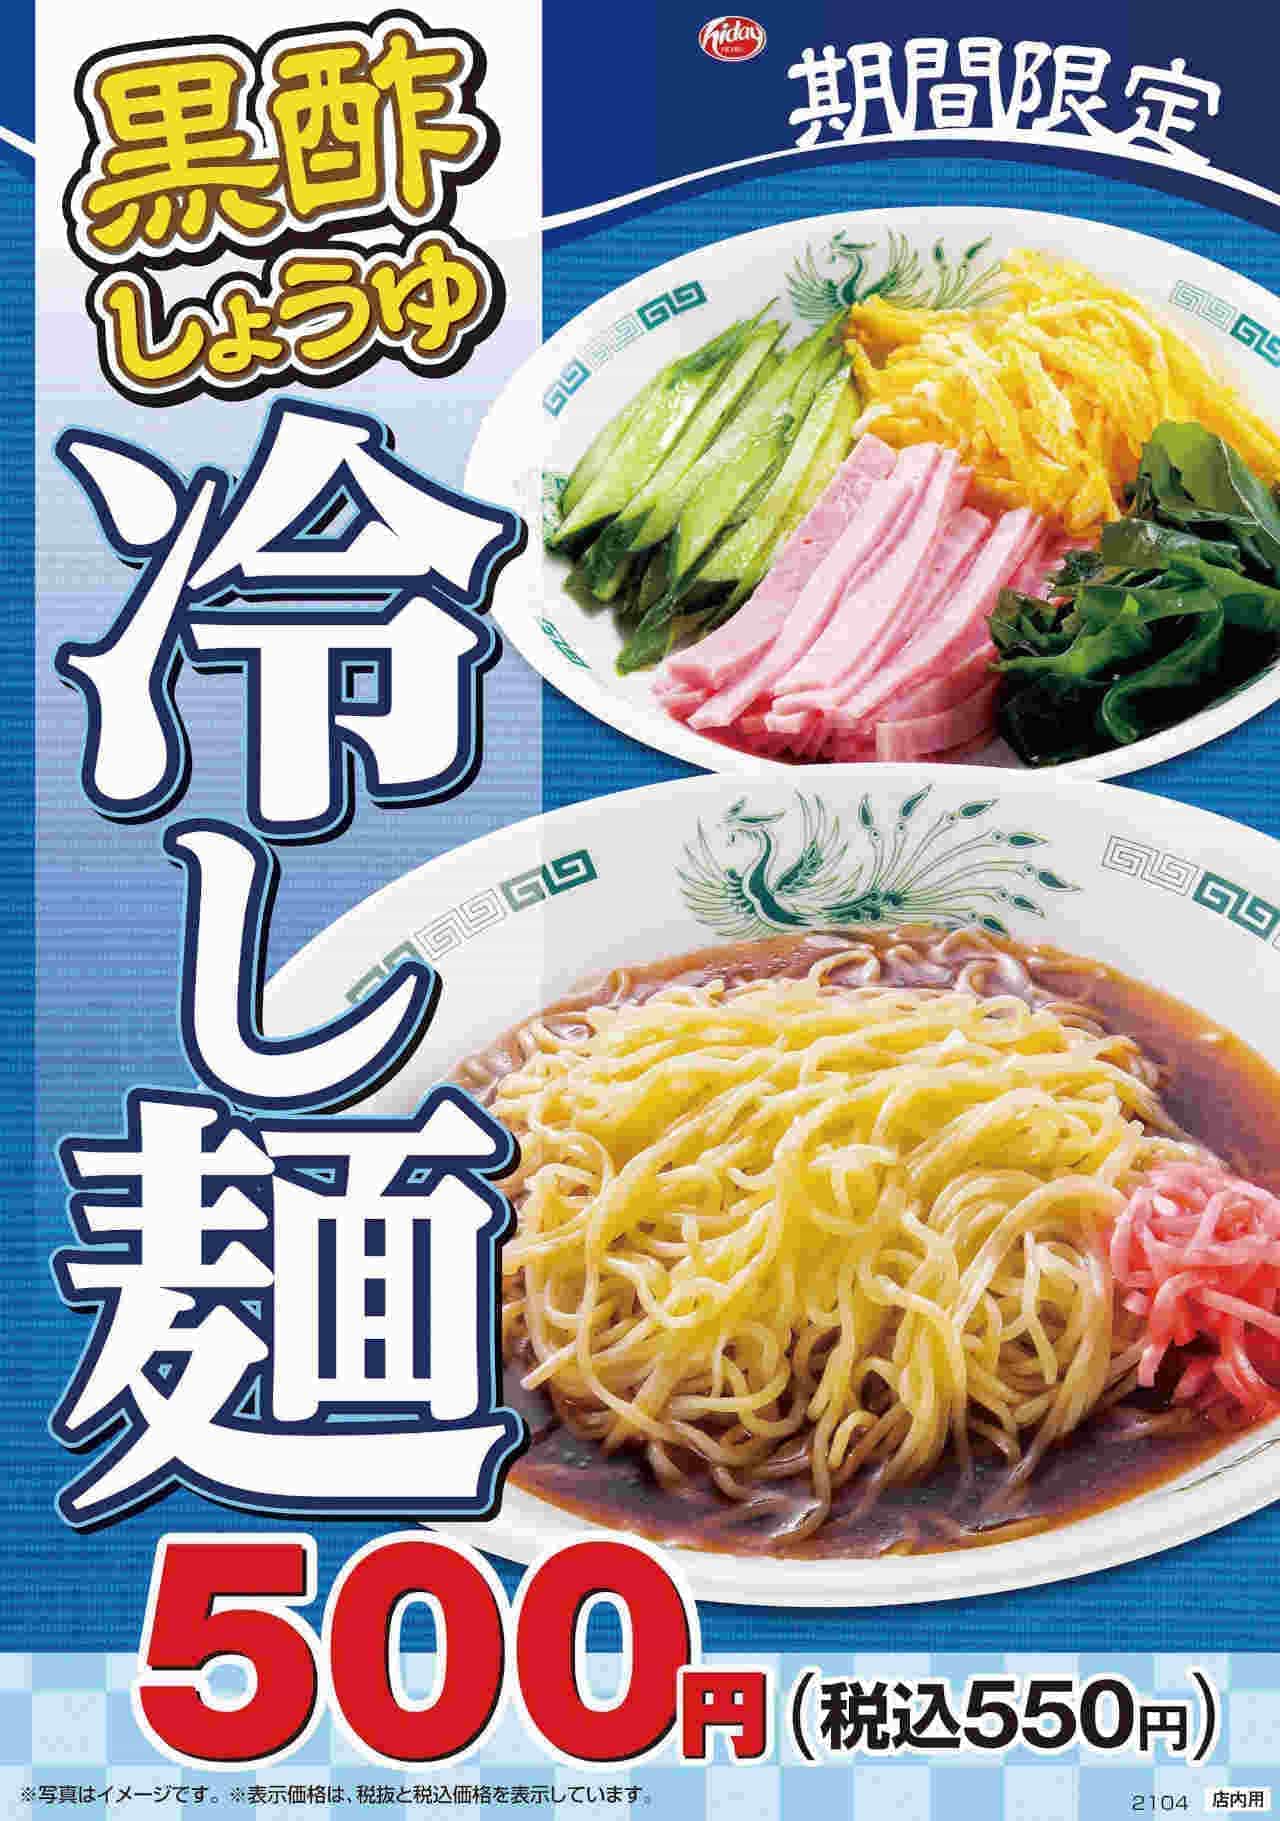 Hidakaya "Kurozu soy sauce cold noodles